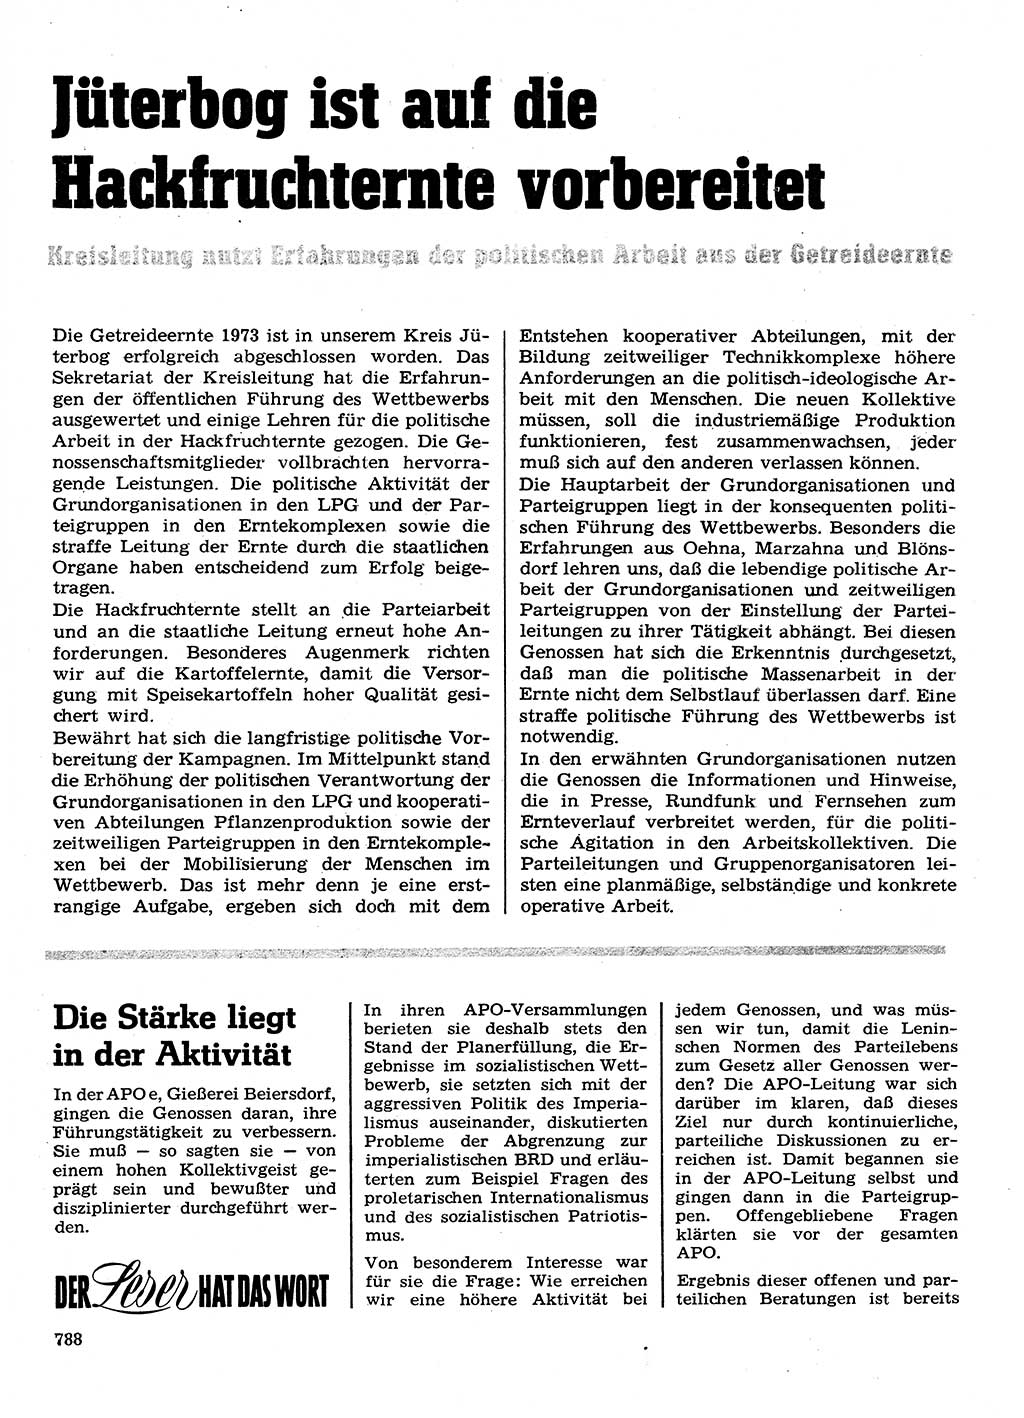 Neuer Weg (NW), Organ des Zentralkomitees (ZK) der SED (Sozialistische Einheitspartei Deutschlands) für Fragen des Parteilebens, 28. Jahrgang [Deutsche Demokratische Republik (DDR)] 1973, Seite 788 (NW ZK SED DDR 1973, S. 788)